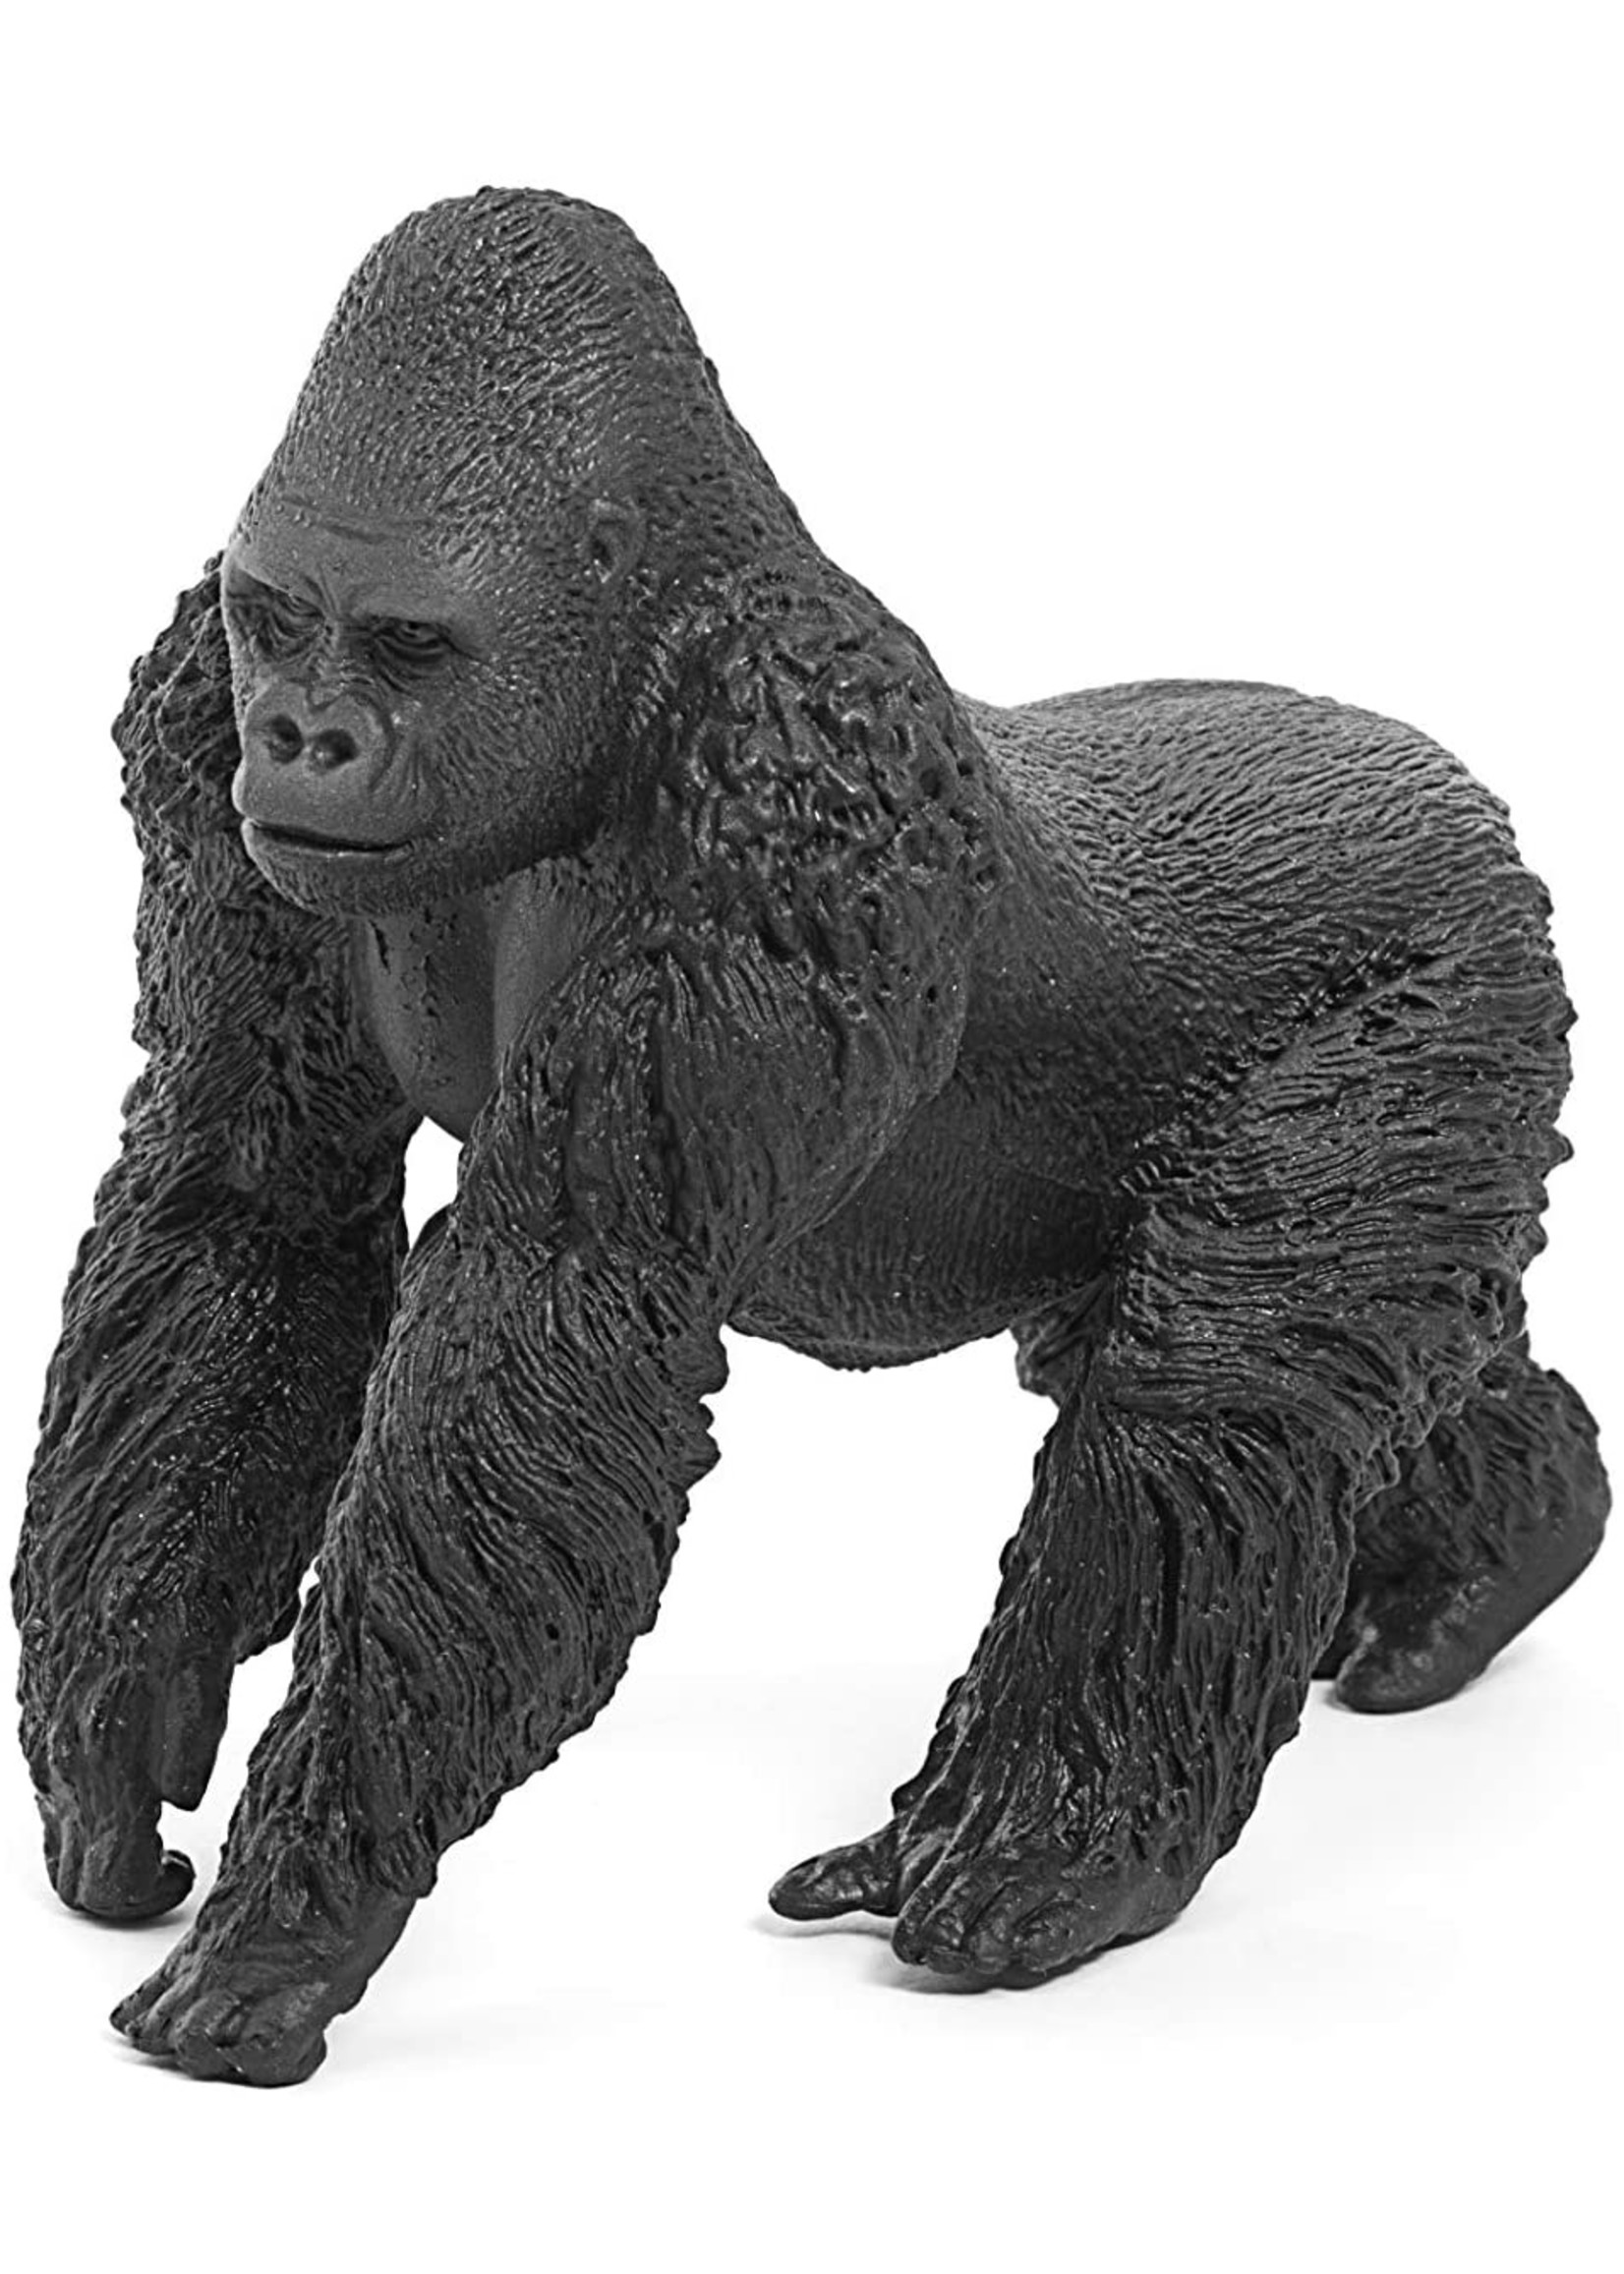 Schleich 14770 - Gorilla, Male